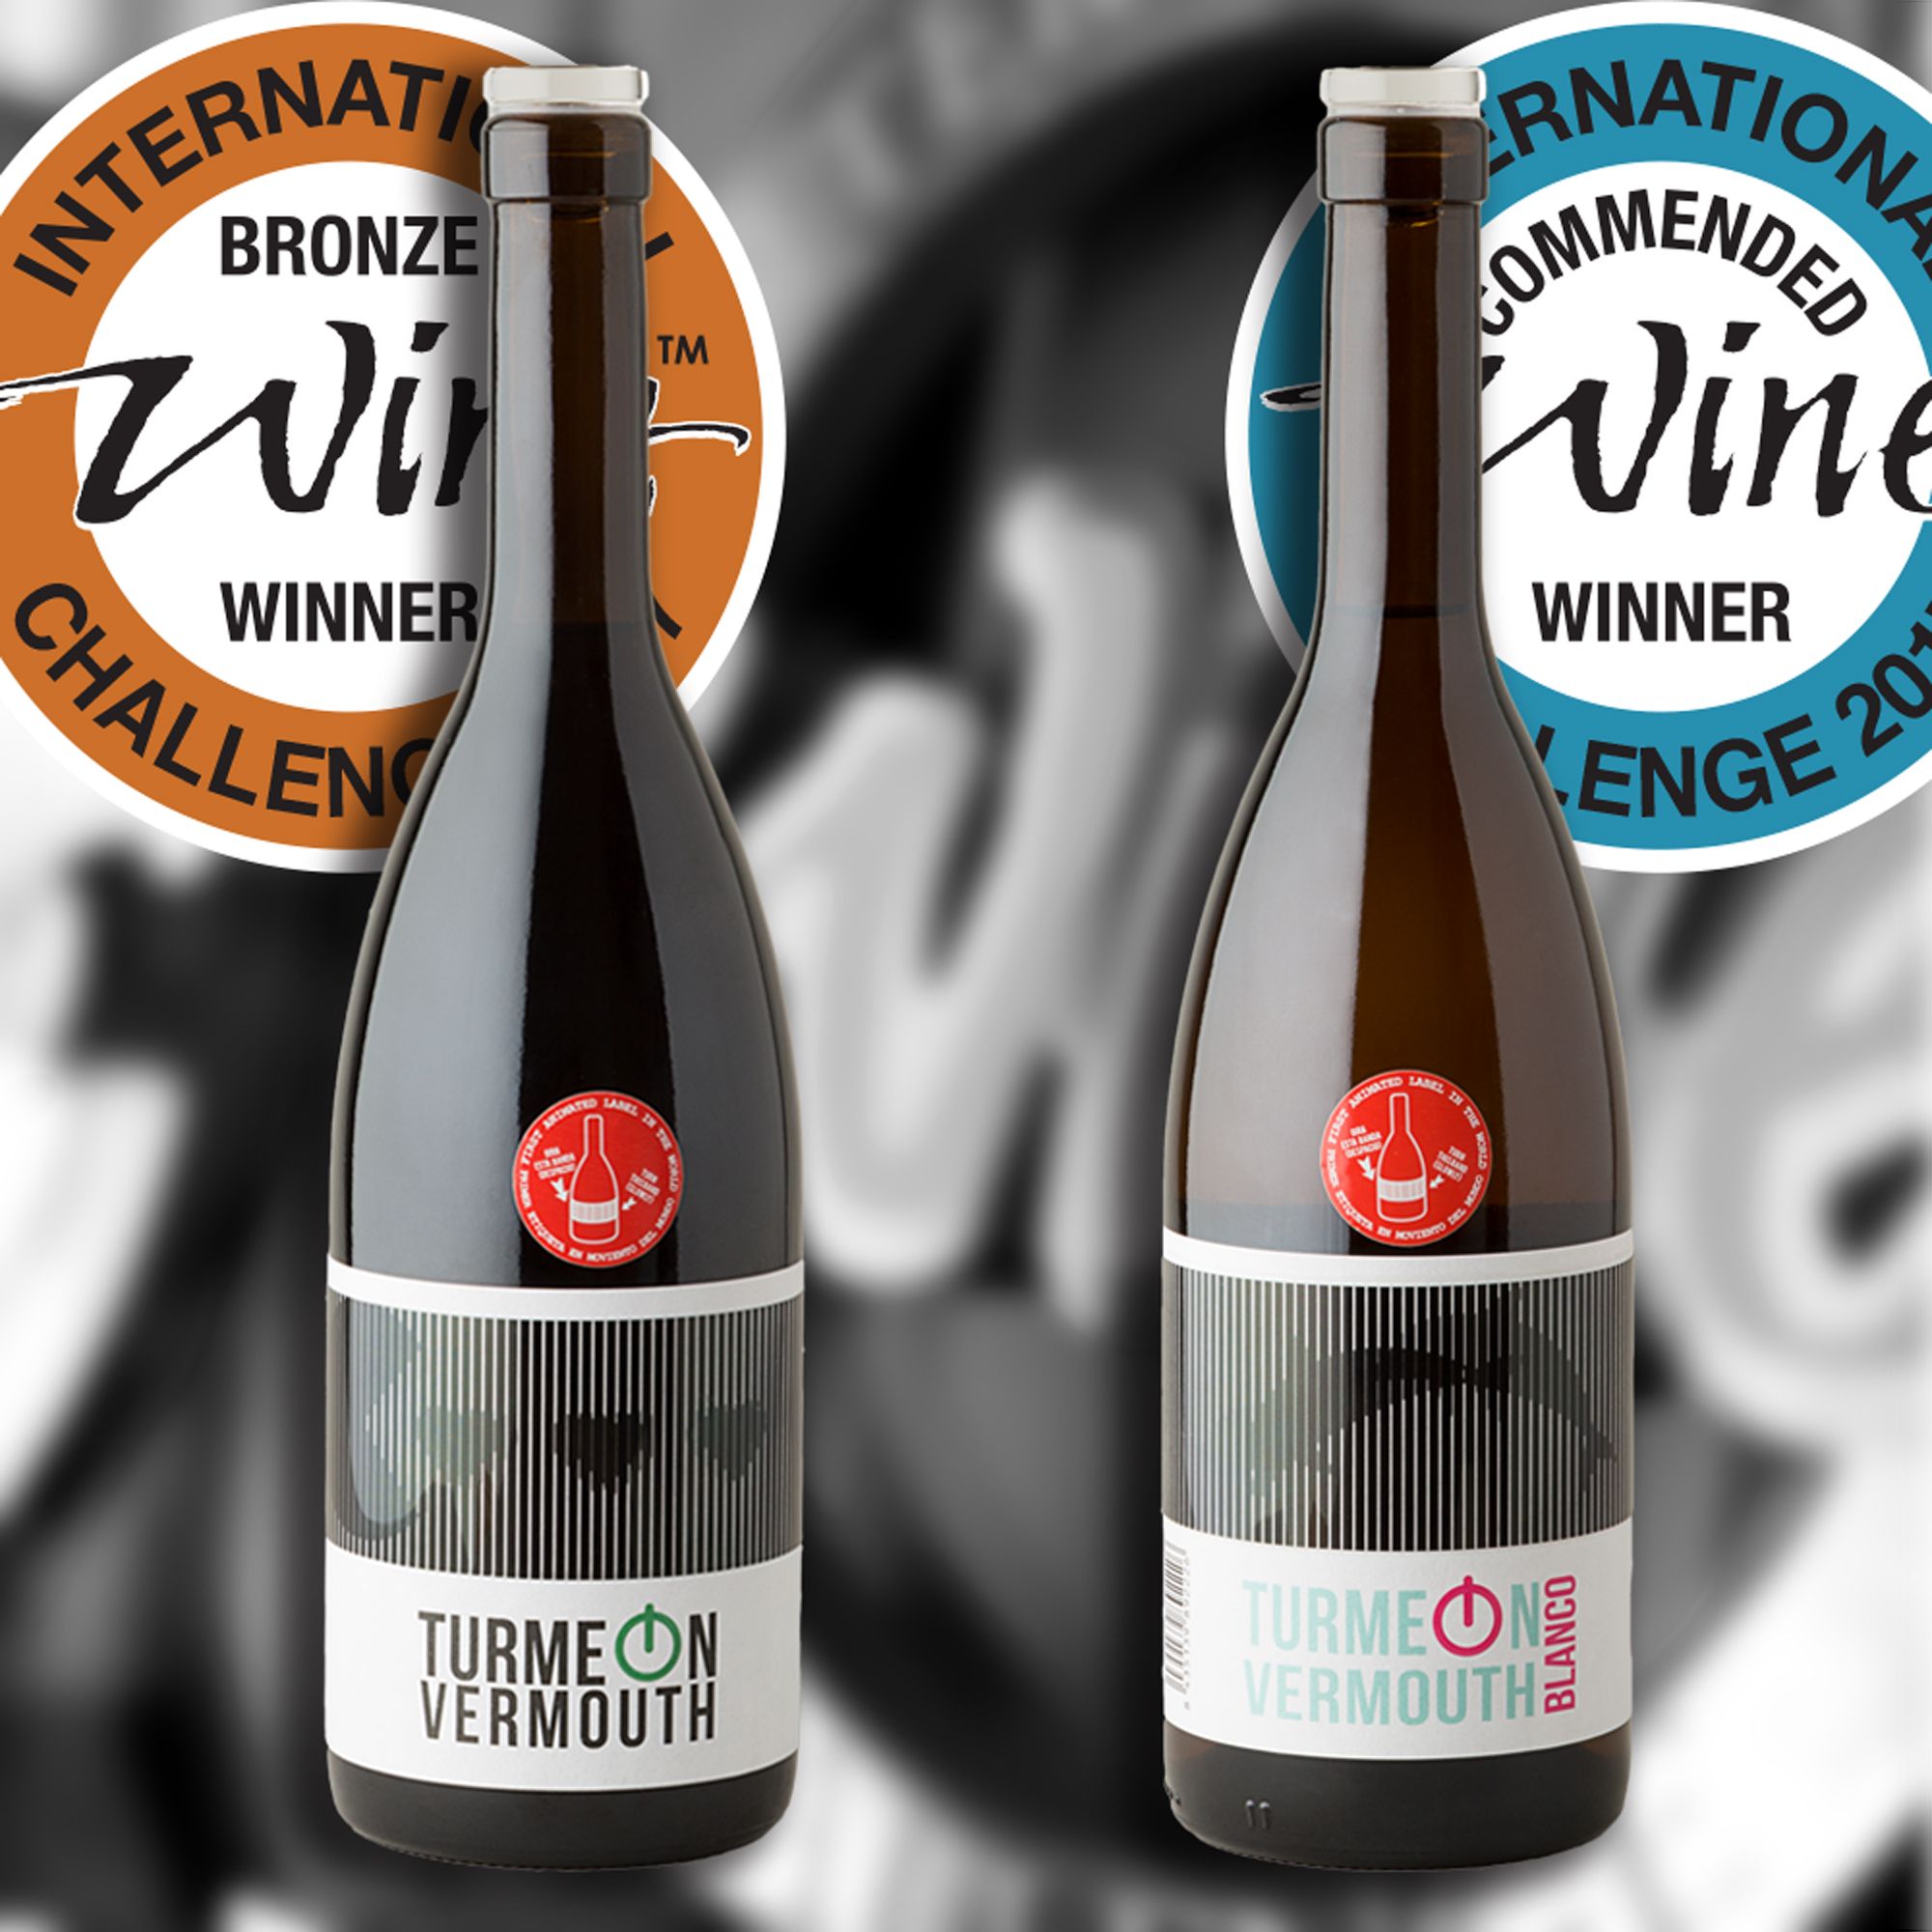 Turmeon, el único vermut español premiado en los International Wine Challenge 2016